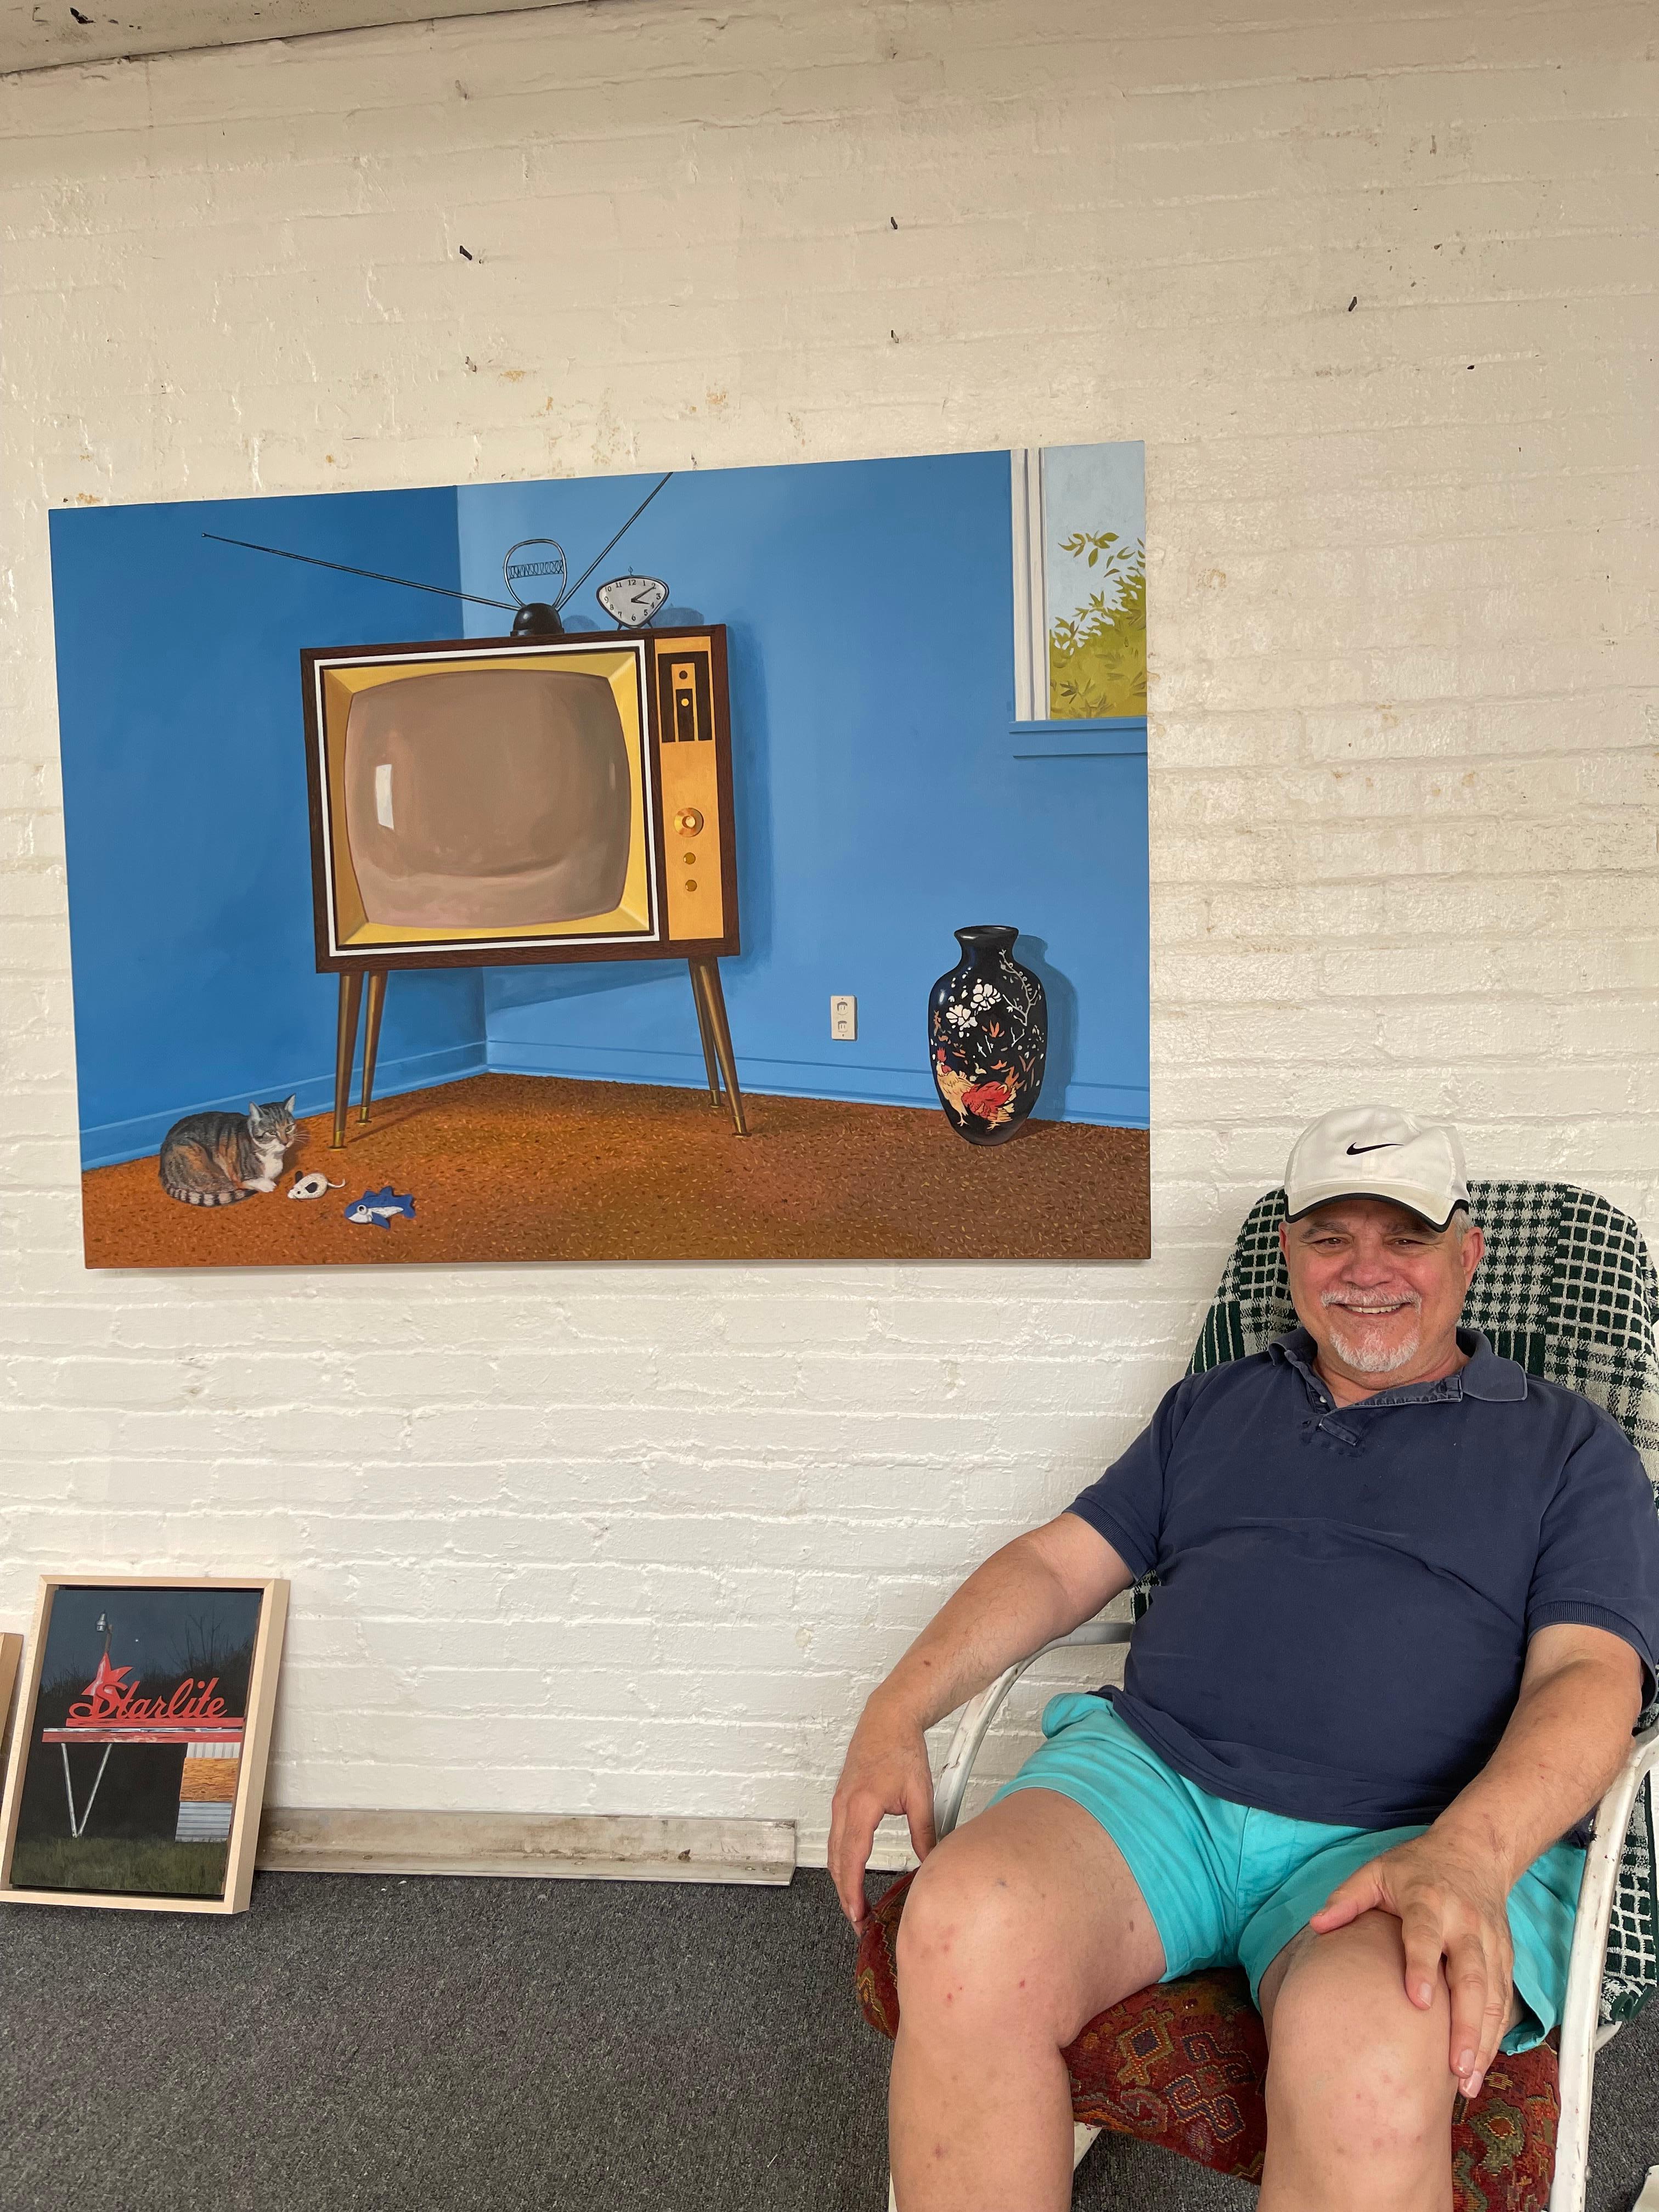 TV contemporaine, américaine, bleue, vintage, avec chat dans une pièce moderne du milieu du siècle dernier - Réalisme américain Painting par Daniel Blagg